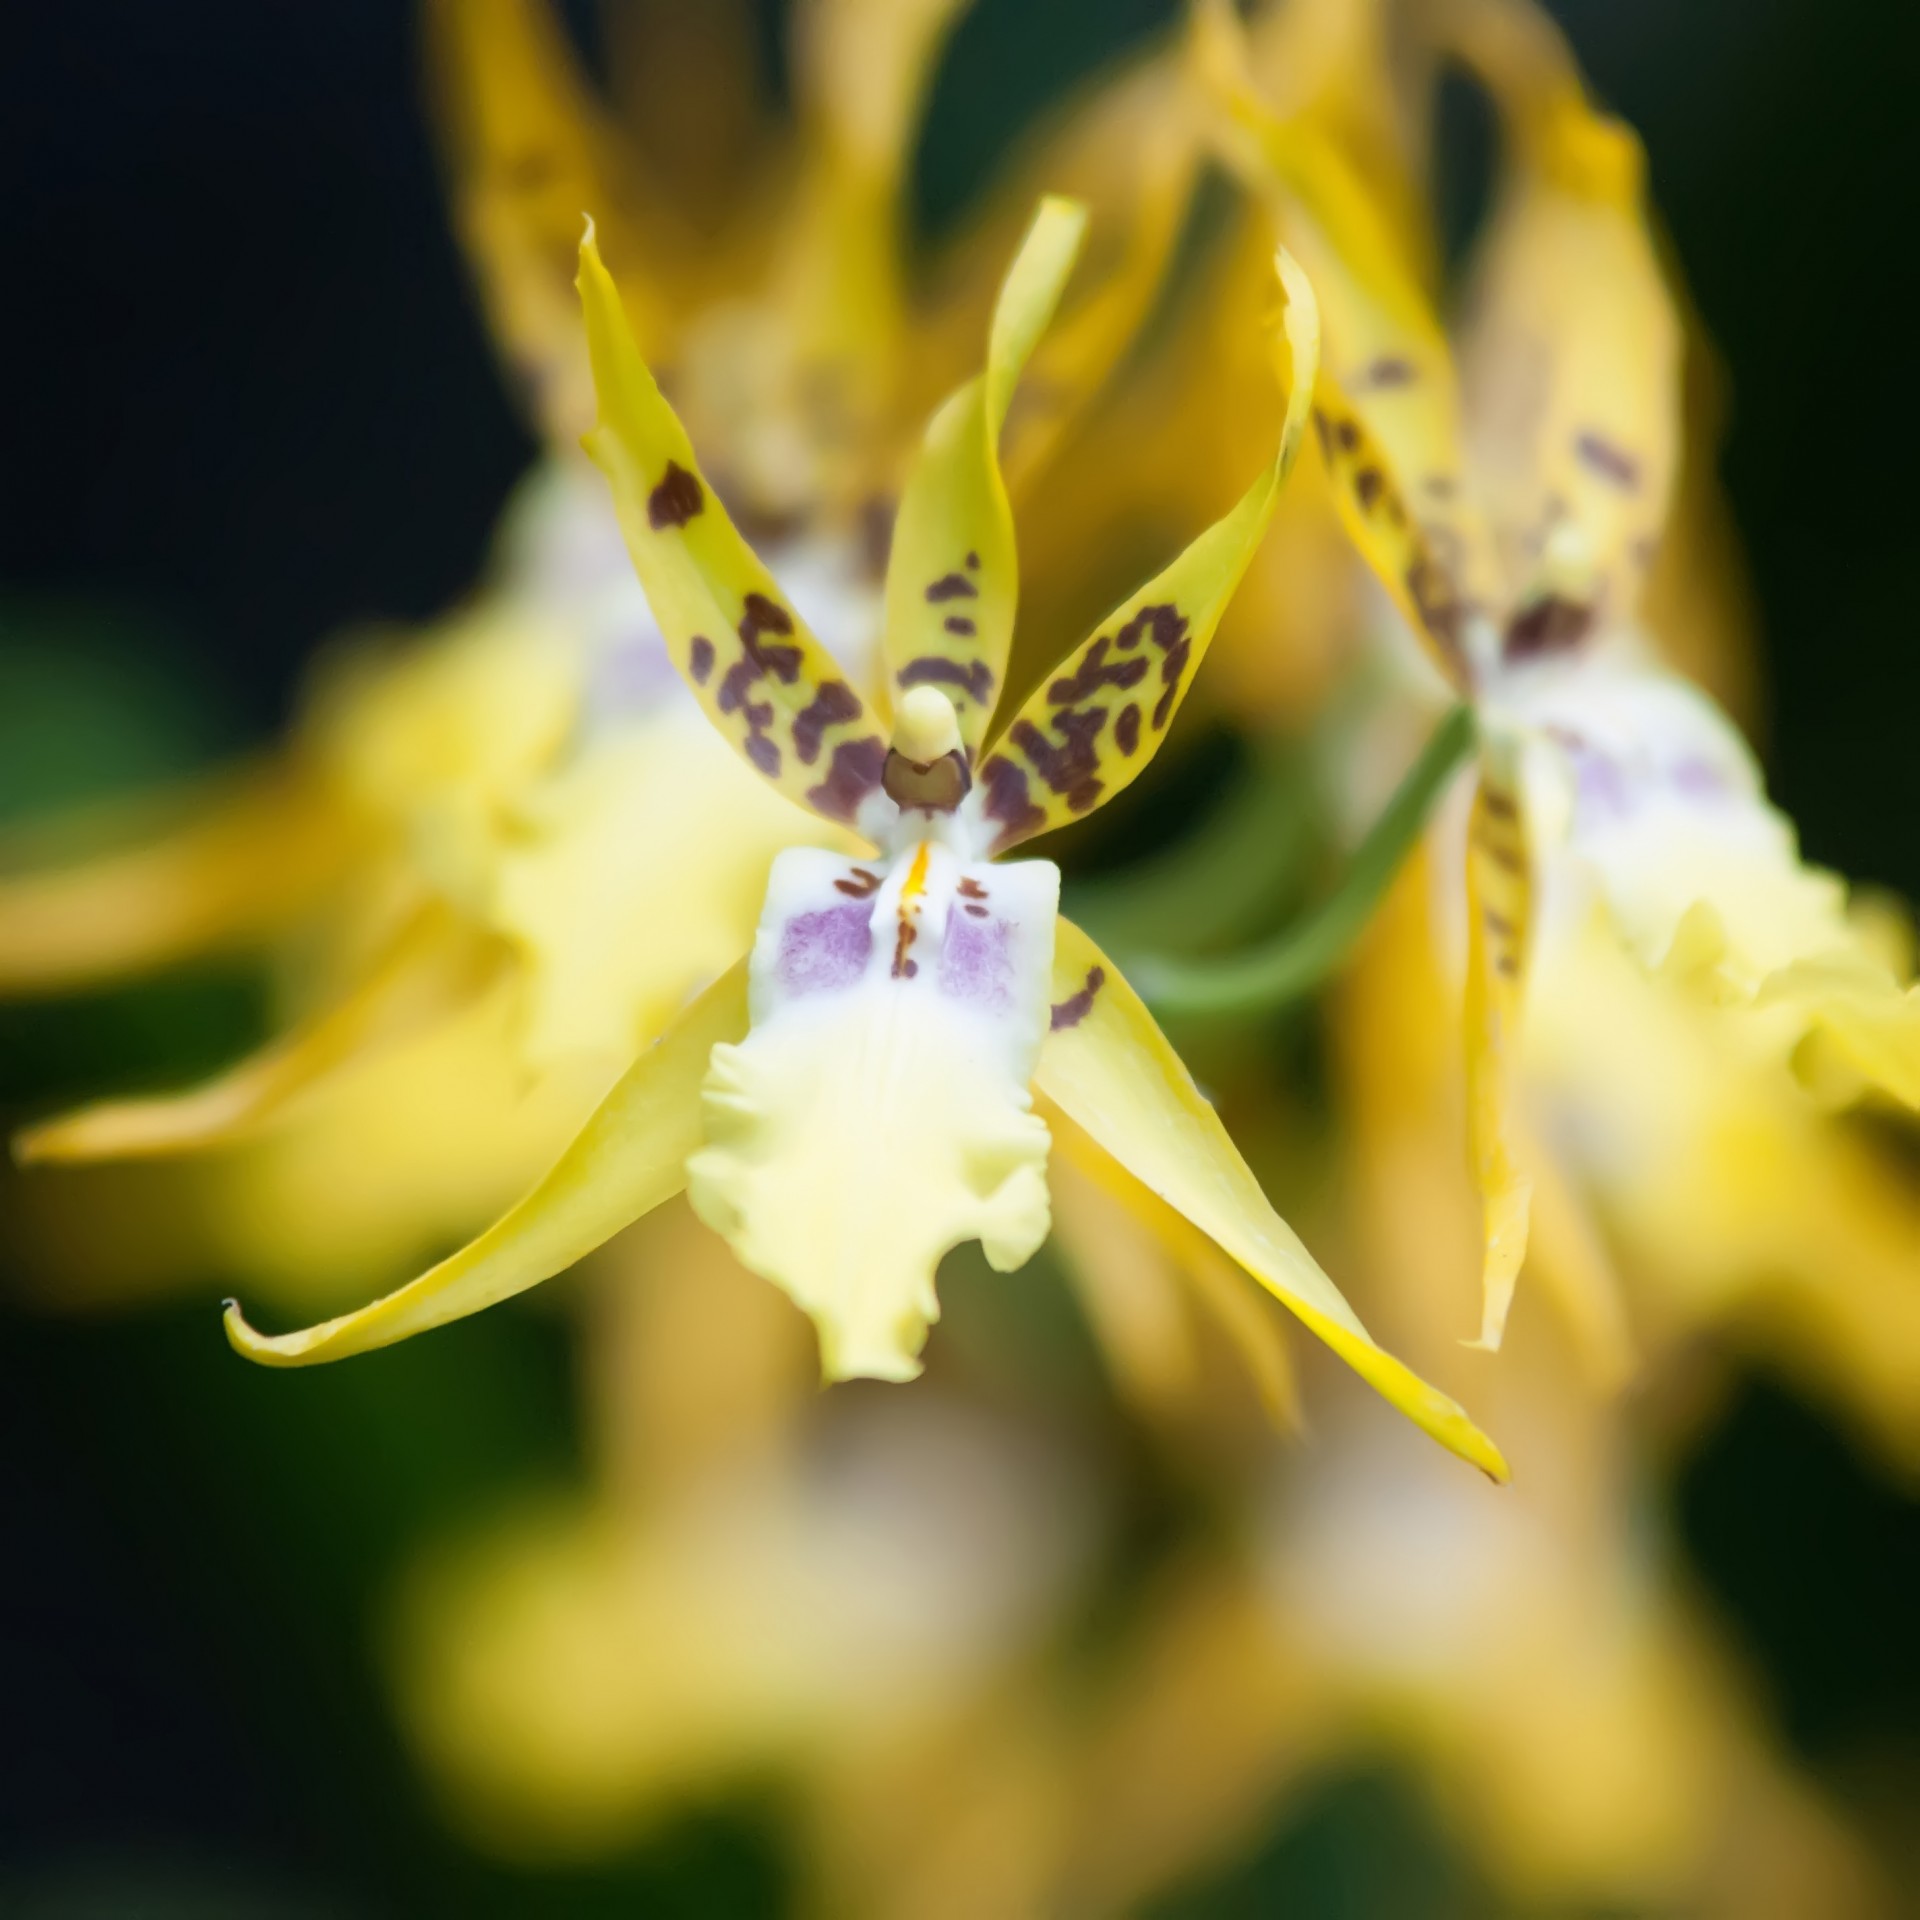 Мини орхидеи